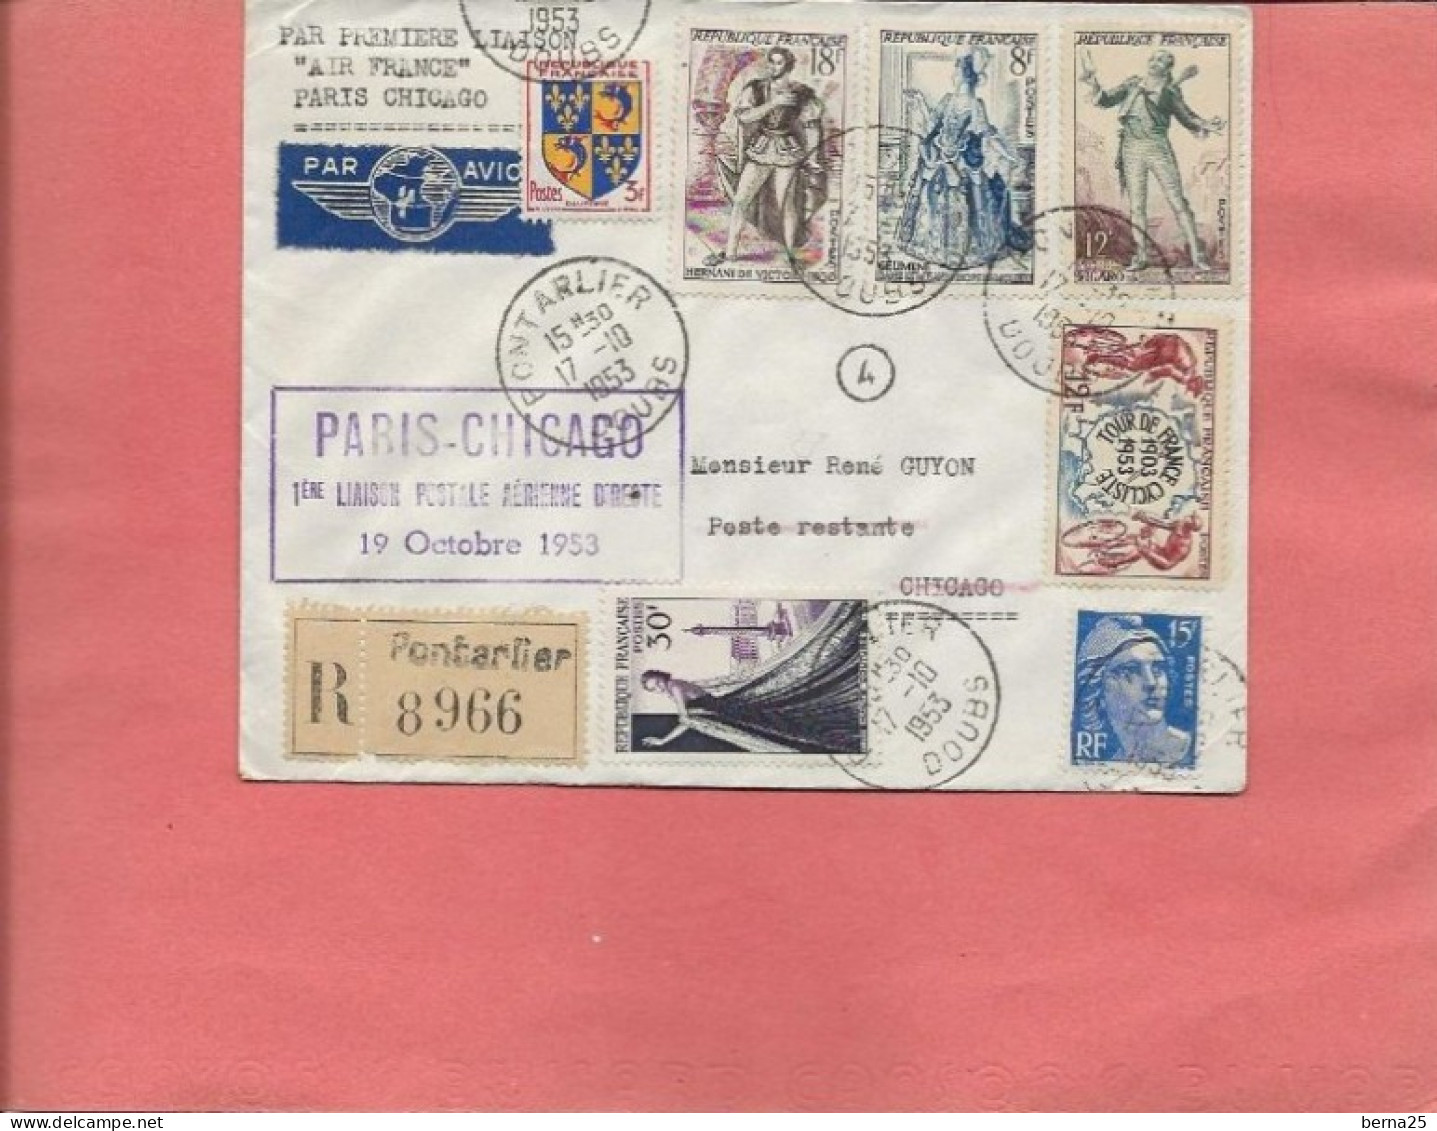 PARIS-CHICAGO PREMIERE LIAISON DIRECTE 1953 AIR FRANCE CACHET A DATE PONTARLIER - 1927-1959 Oblitérés